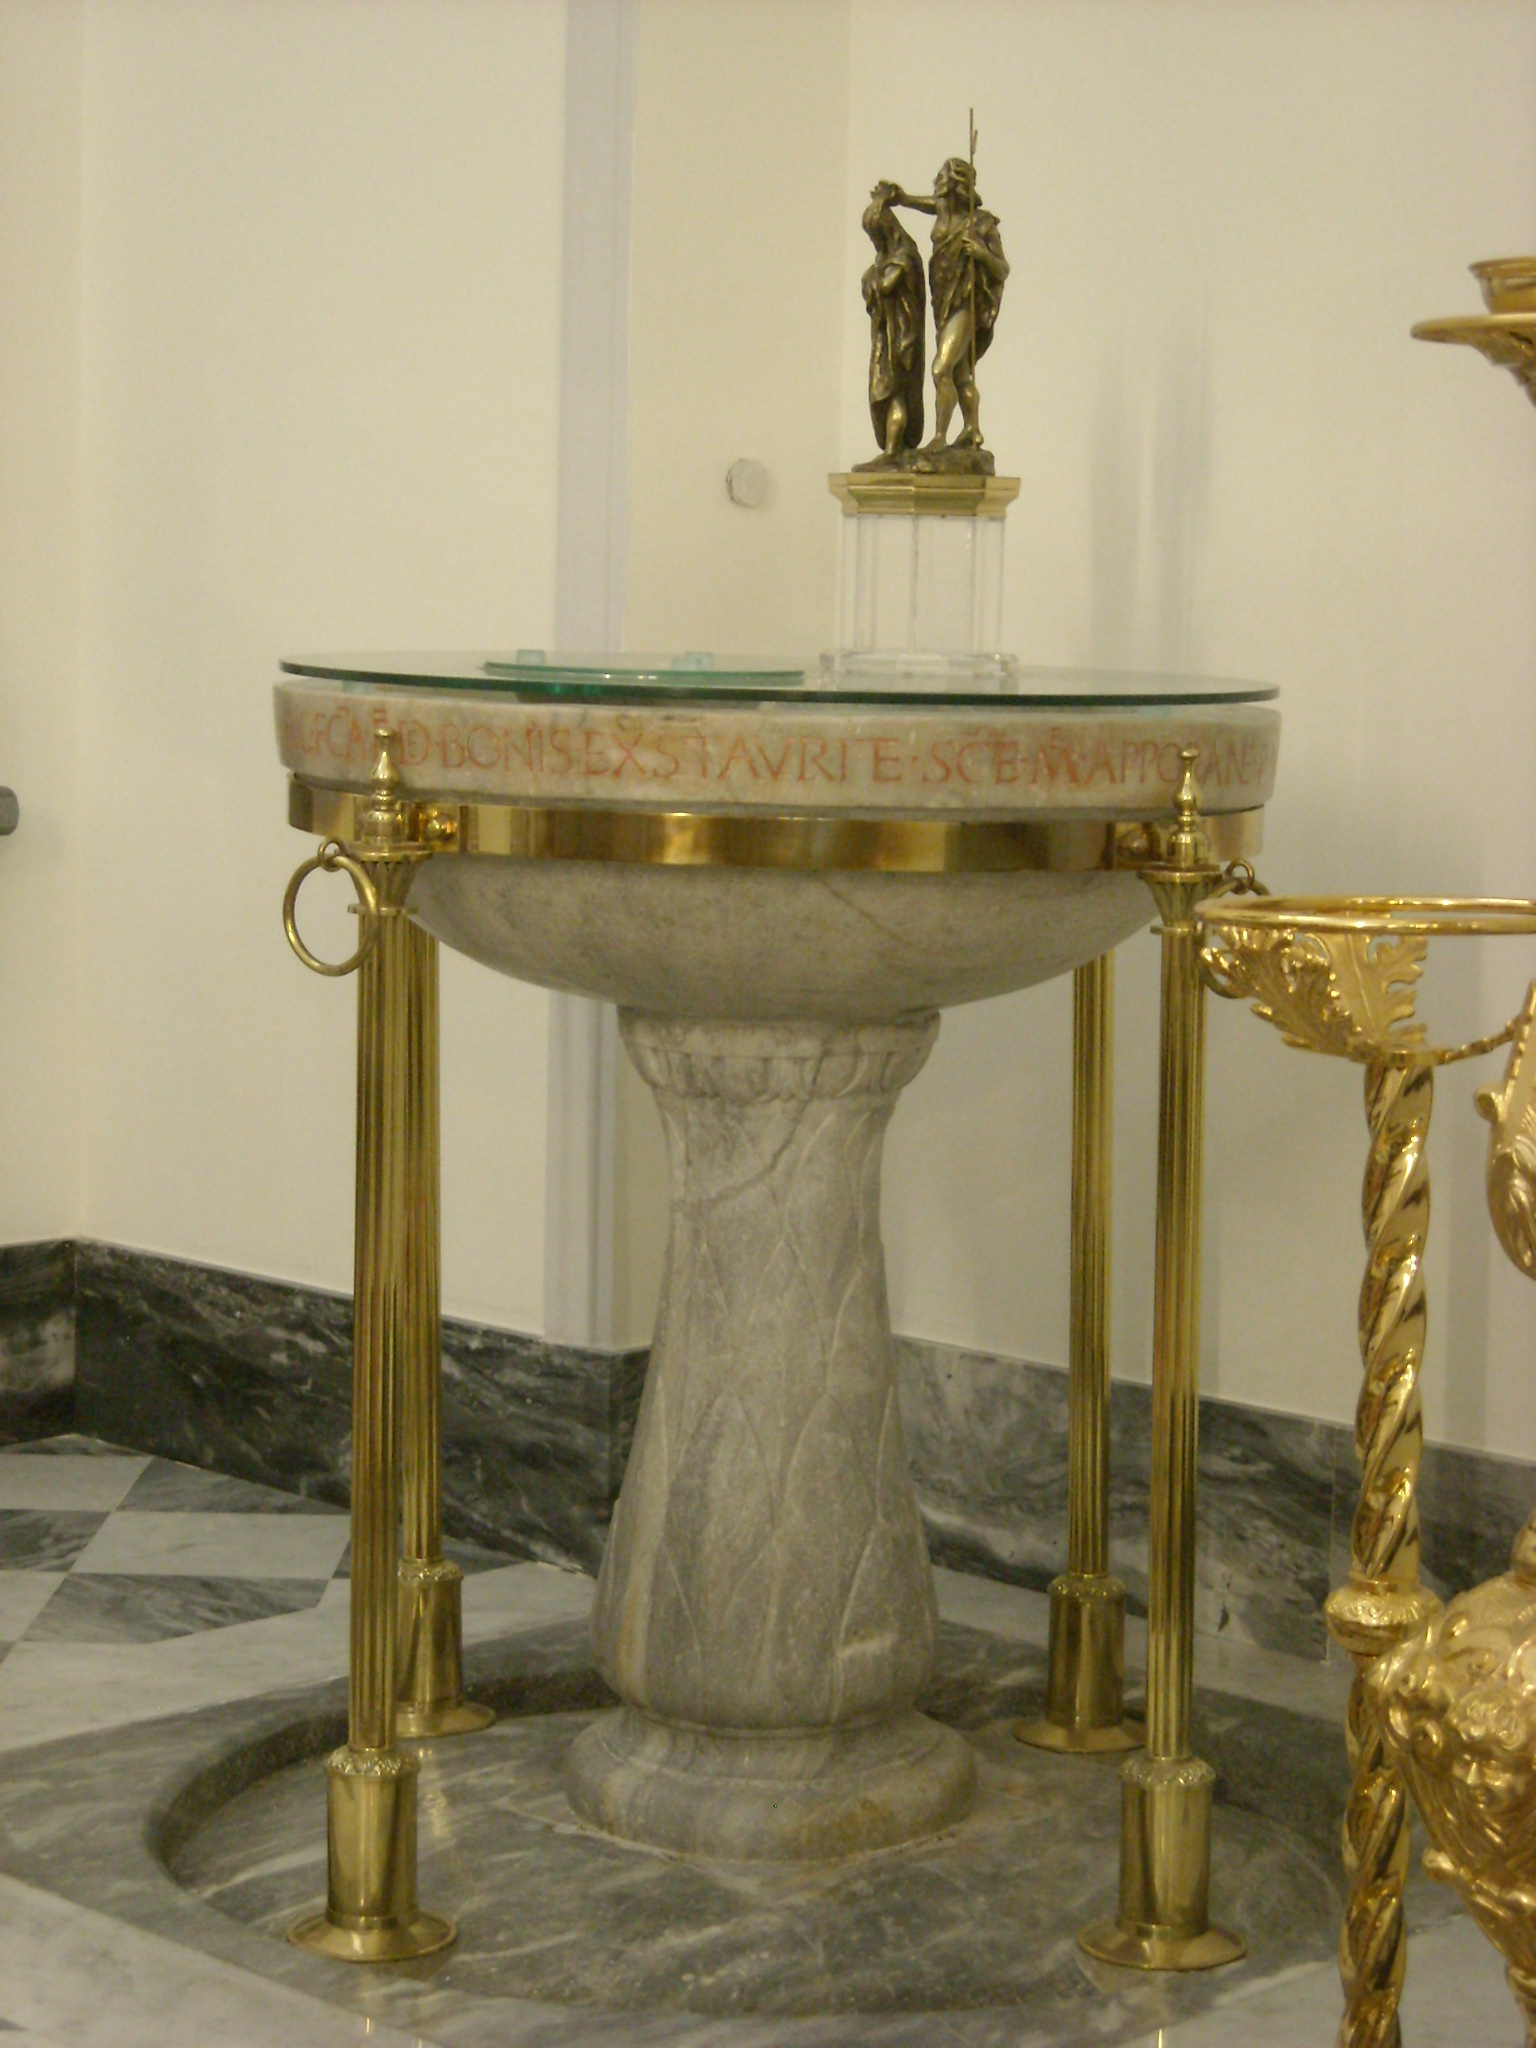 Dommaria, Basilica di Santa Maria a Pugliano, Ercolano: la fonte battesimale in marmo del 1425, 2014, fotografia digitale